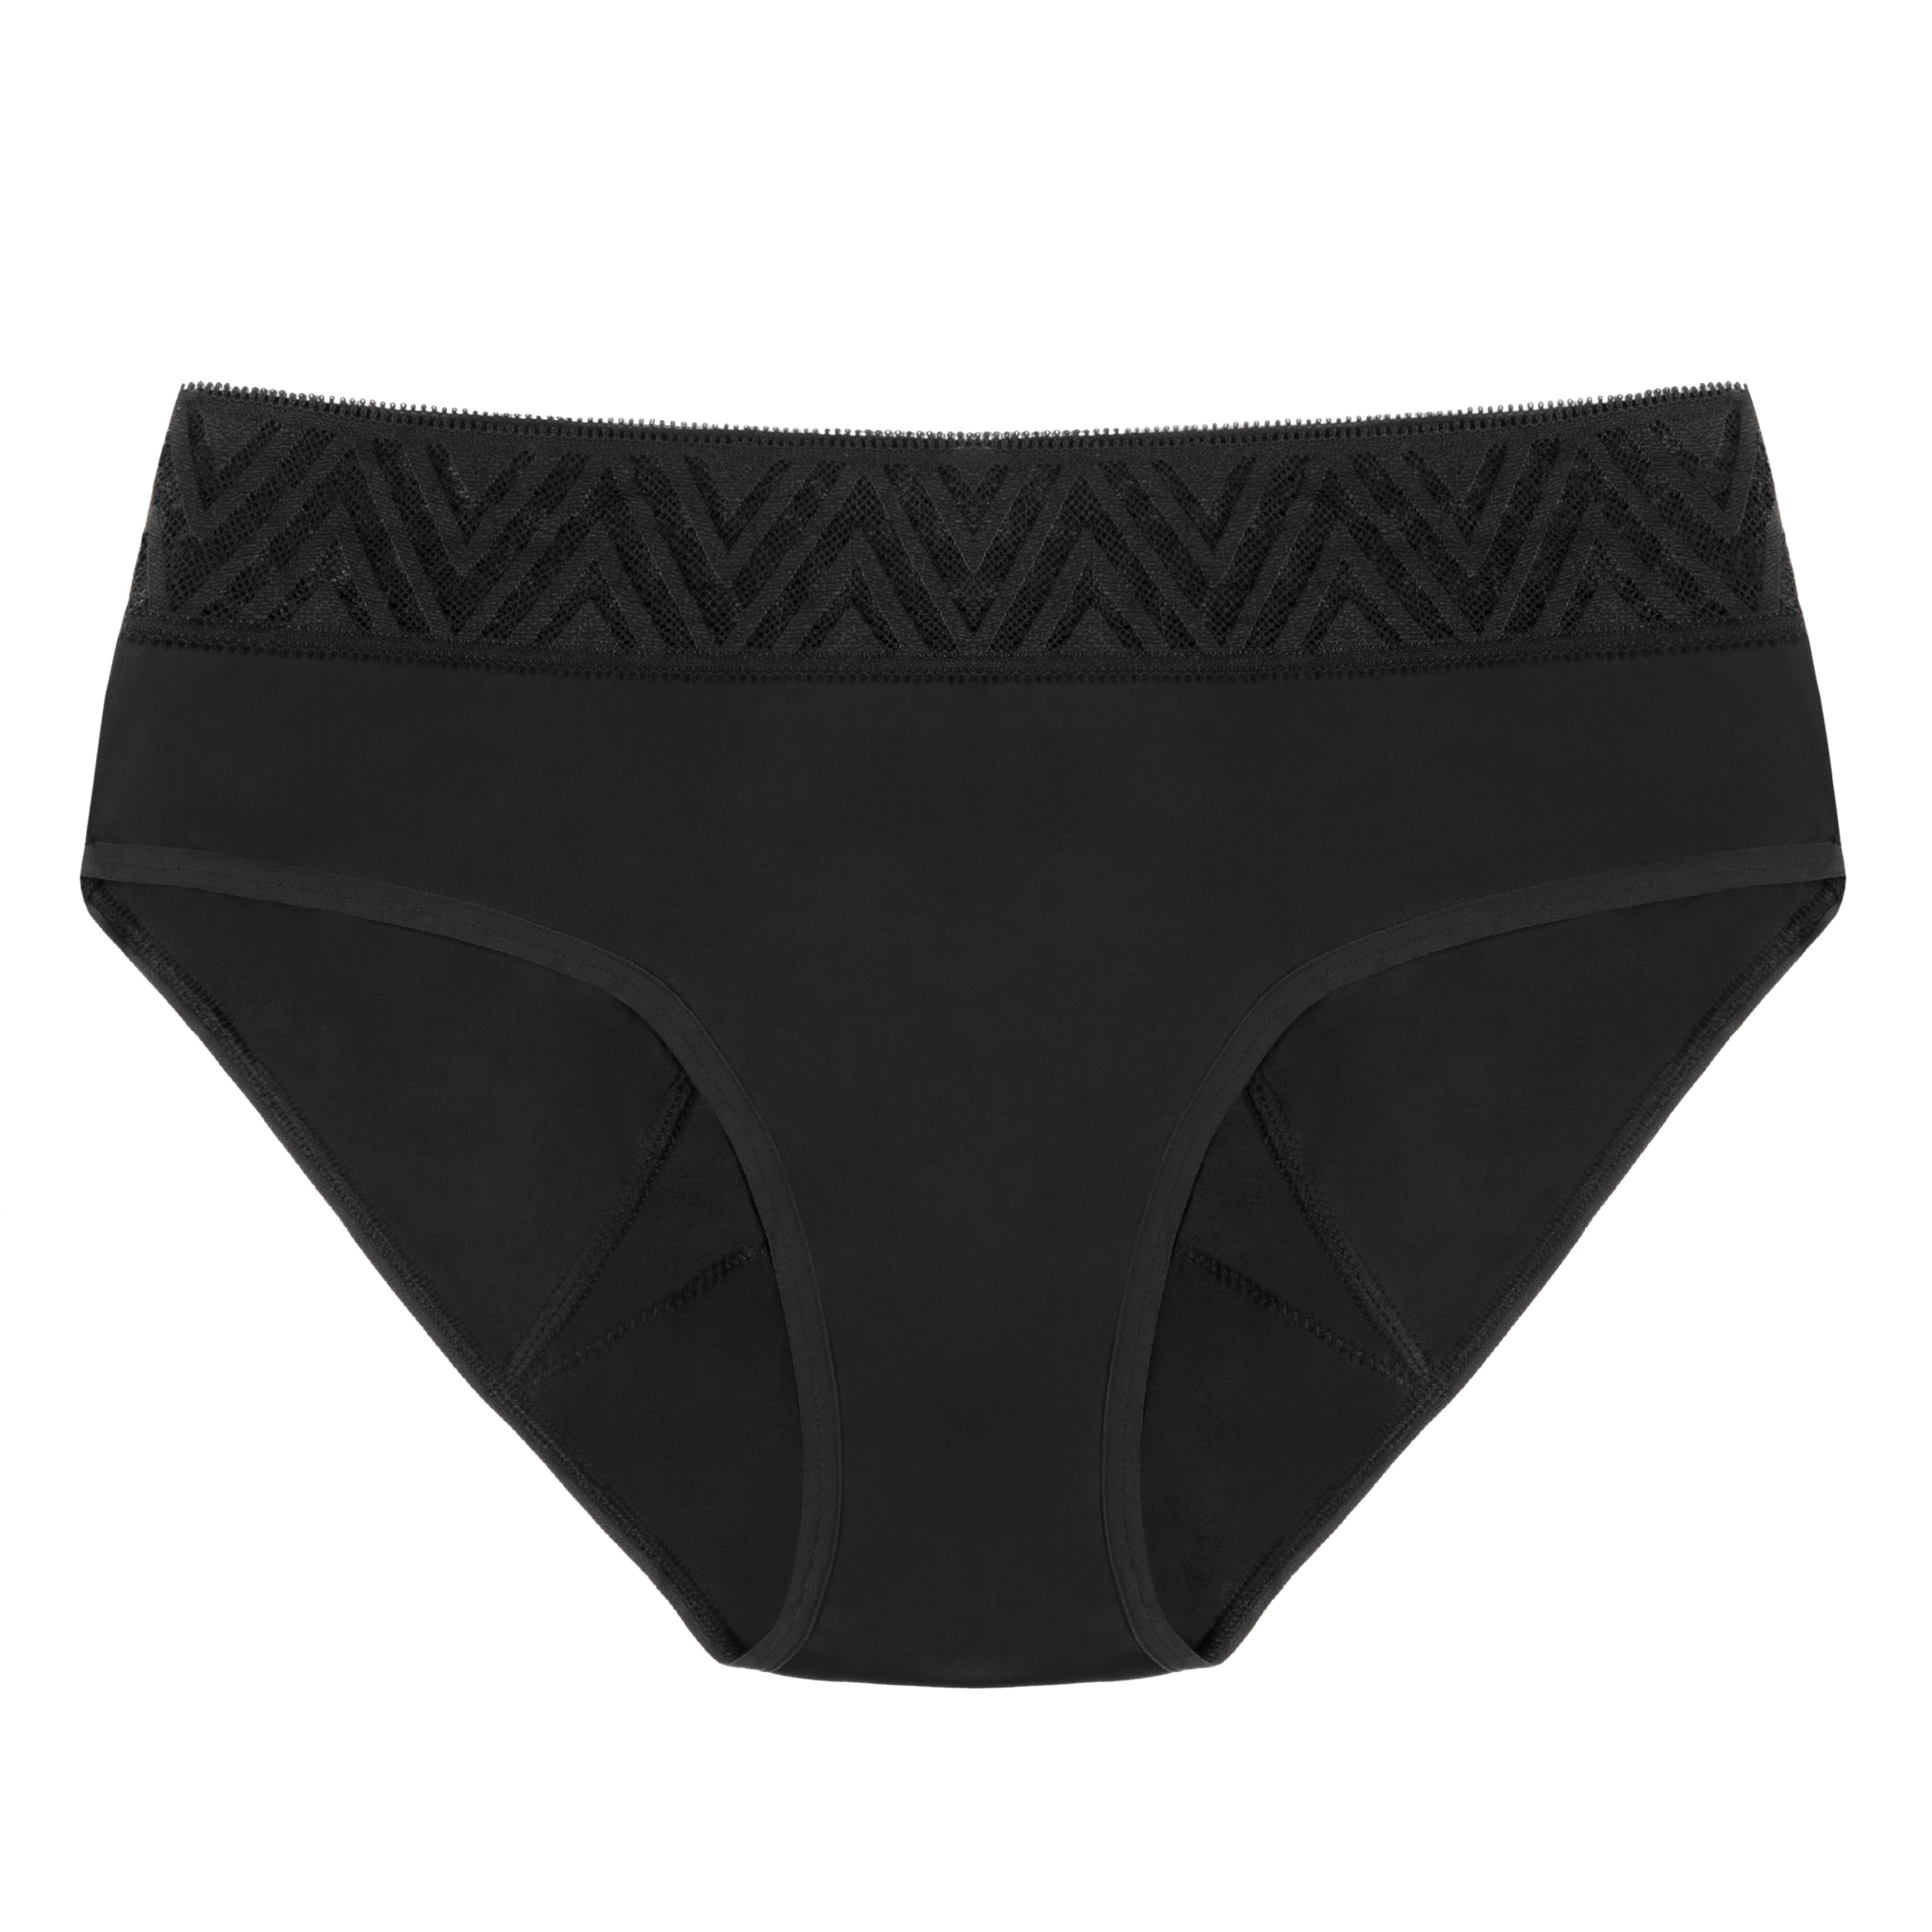 Thinx Period-Proof Underwear